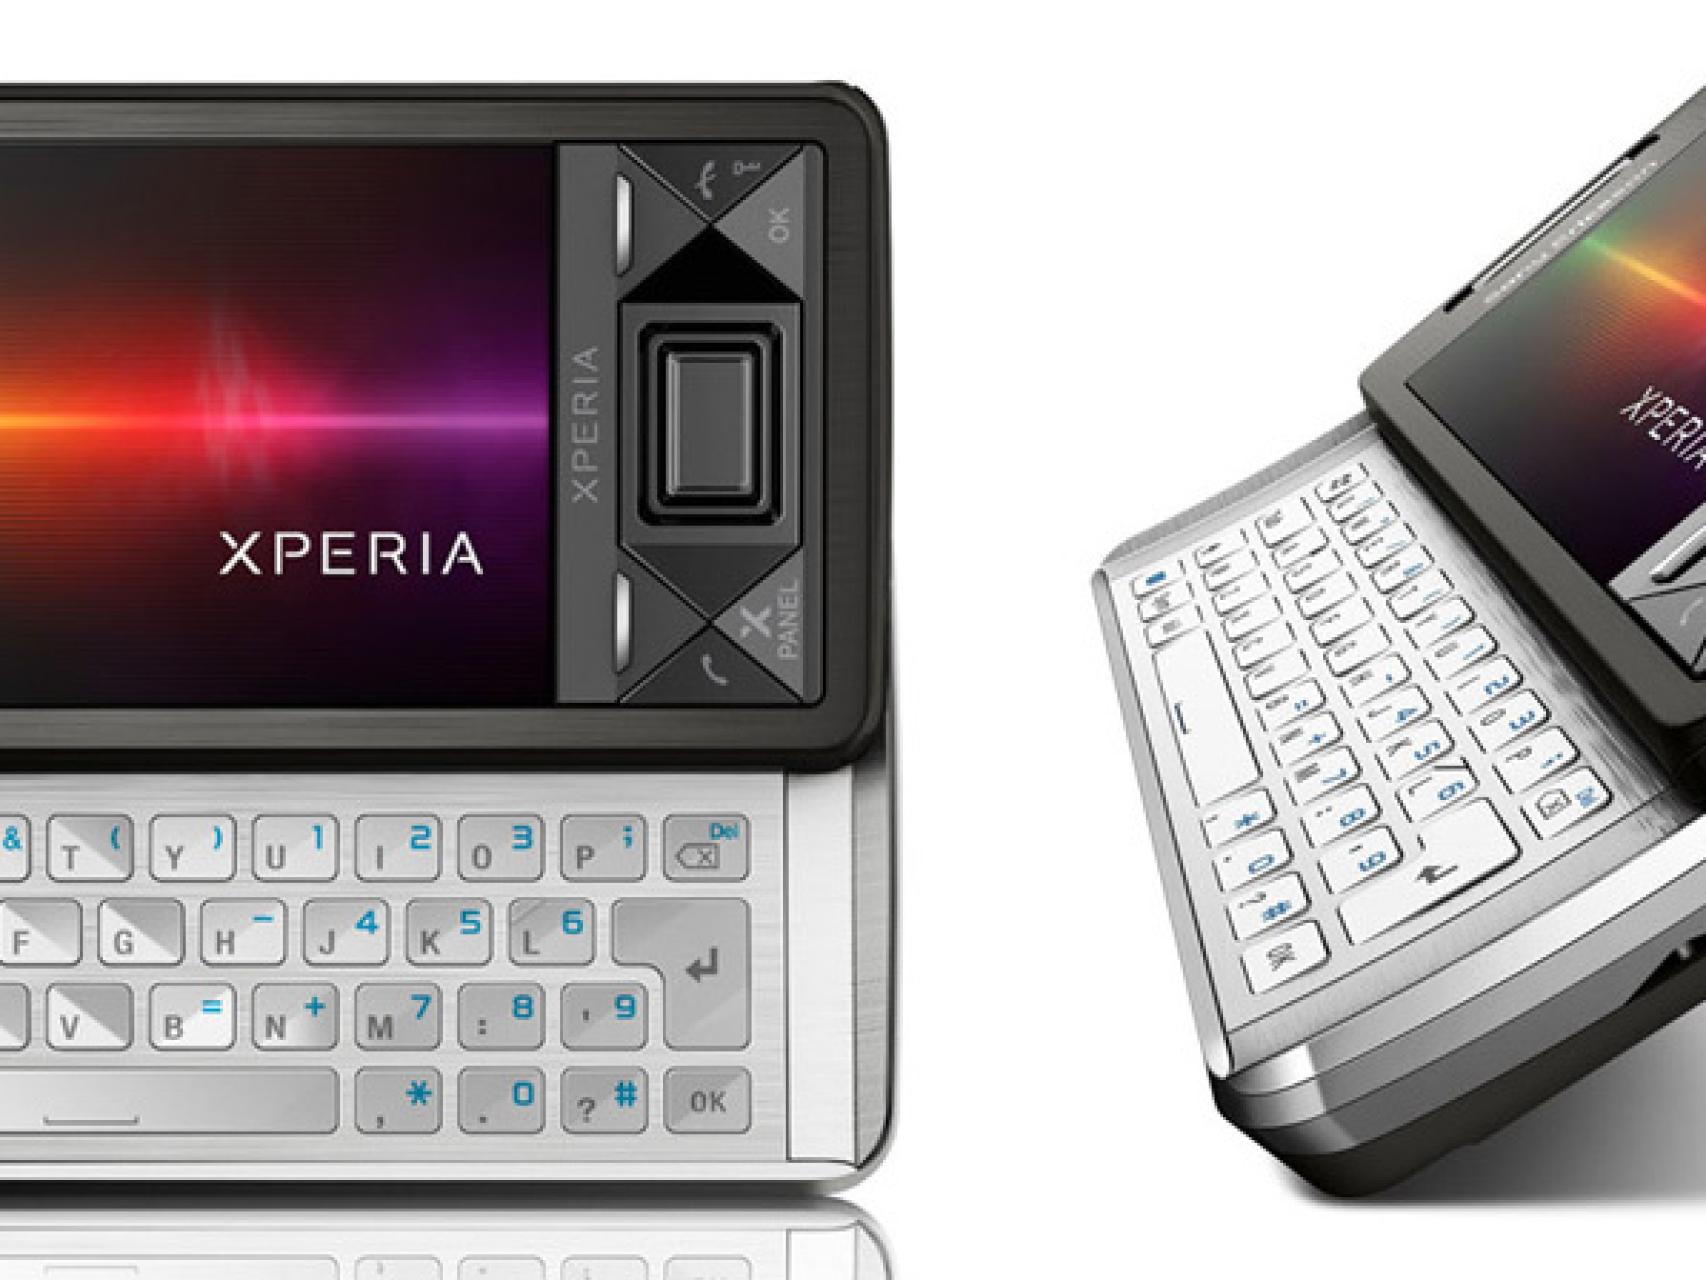 Así eran el Sony Ericsson Xperia X10 mini y su pantalla de 2,55 pulgadas